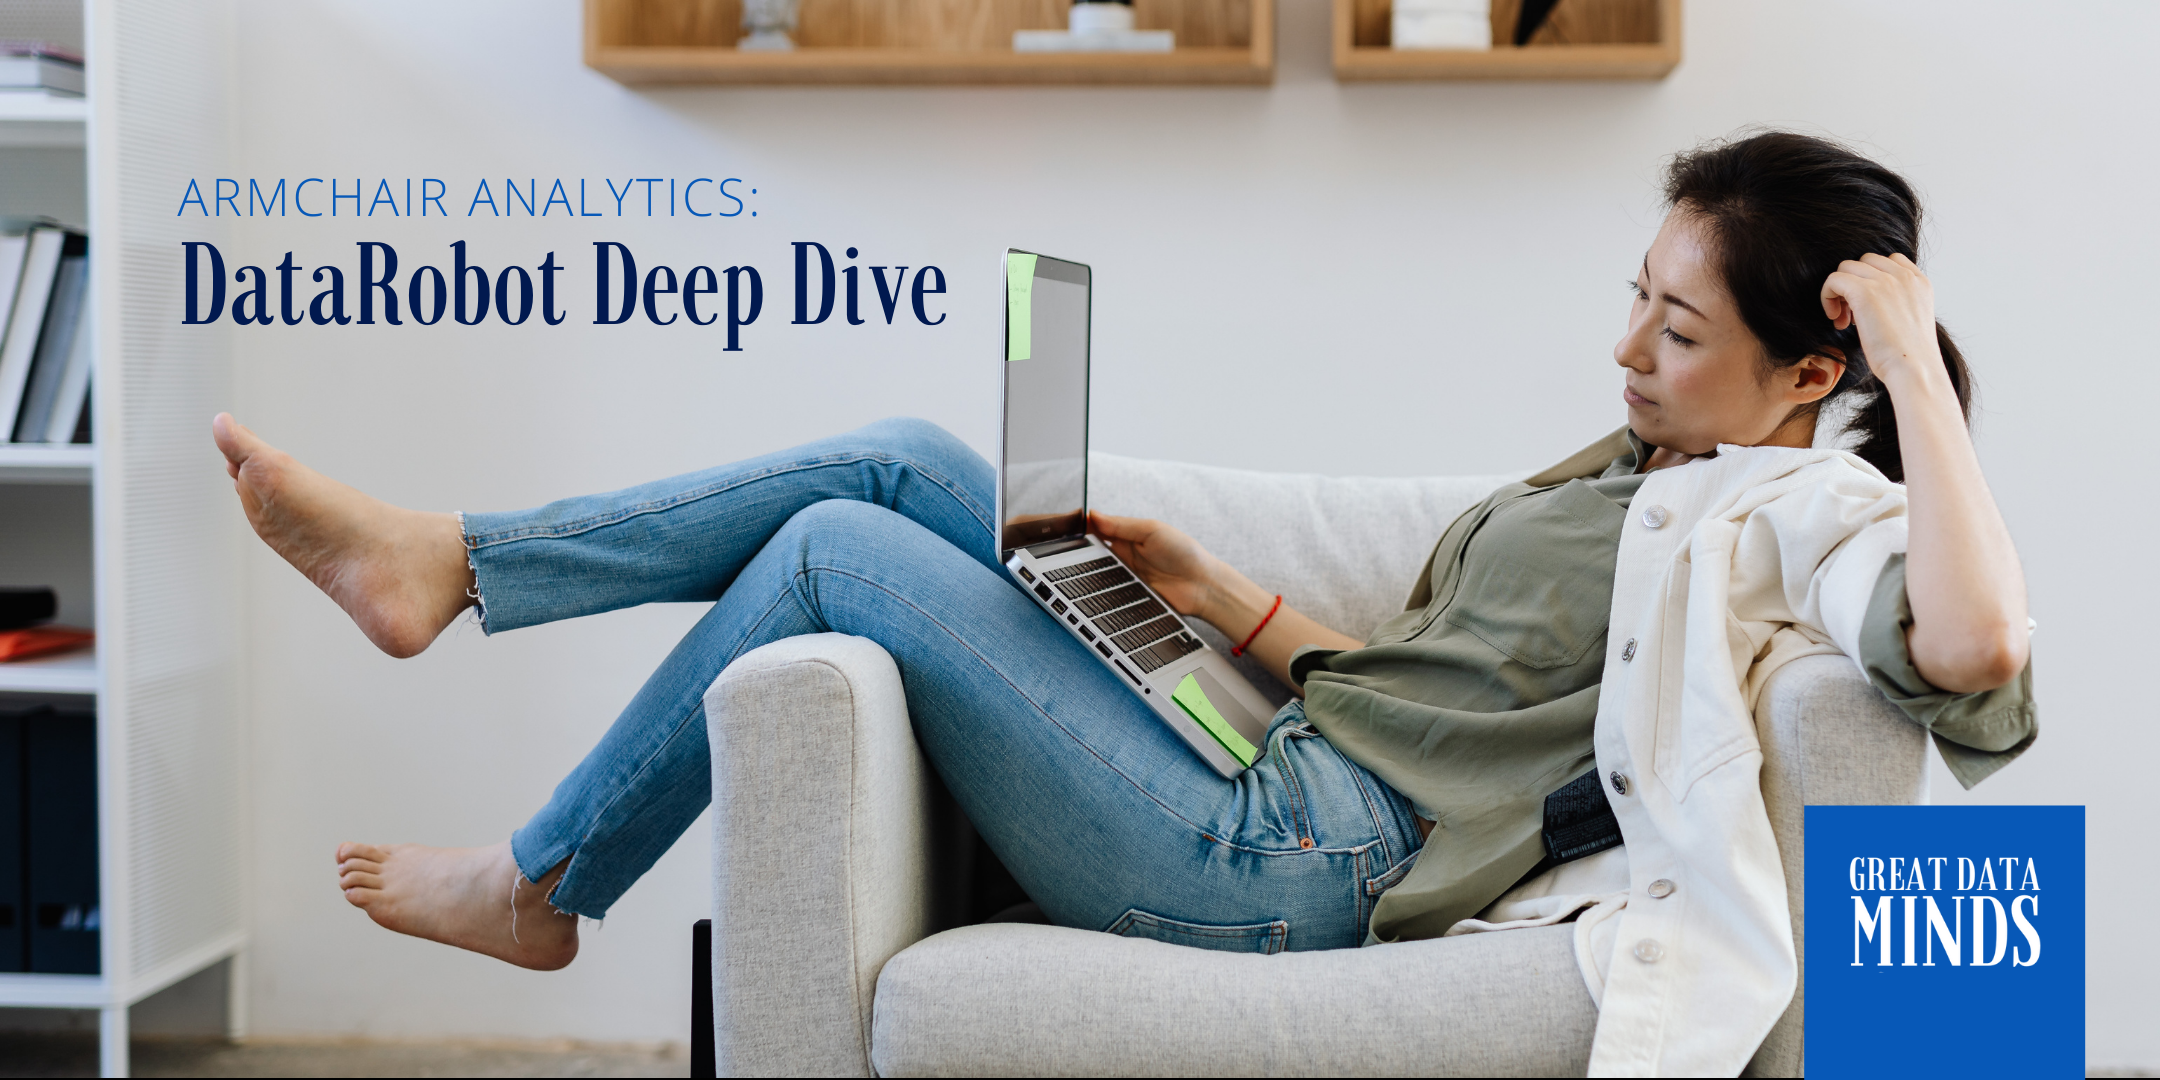 datarobot deep dive armchair analytics event